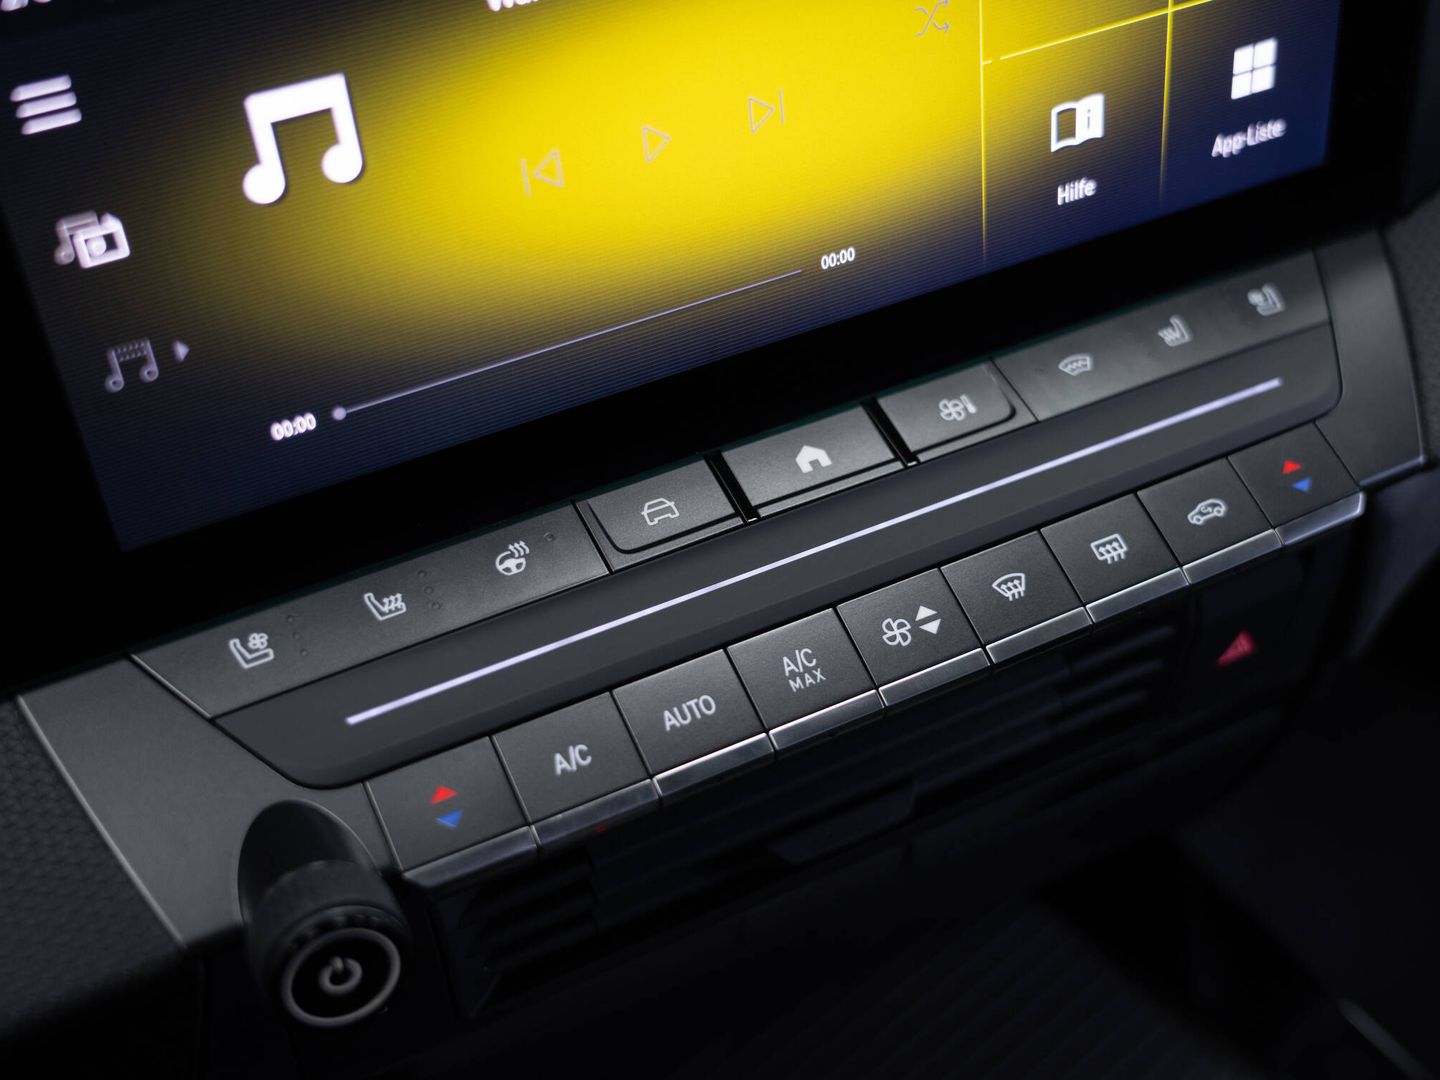 Con buen criterio, Opel mantiene botones convencionales en la consola, lo que agiliza el uso de ciertas funciones.